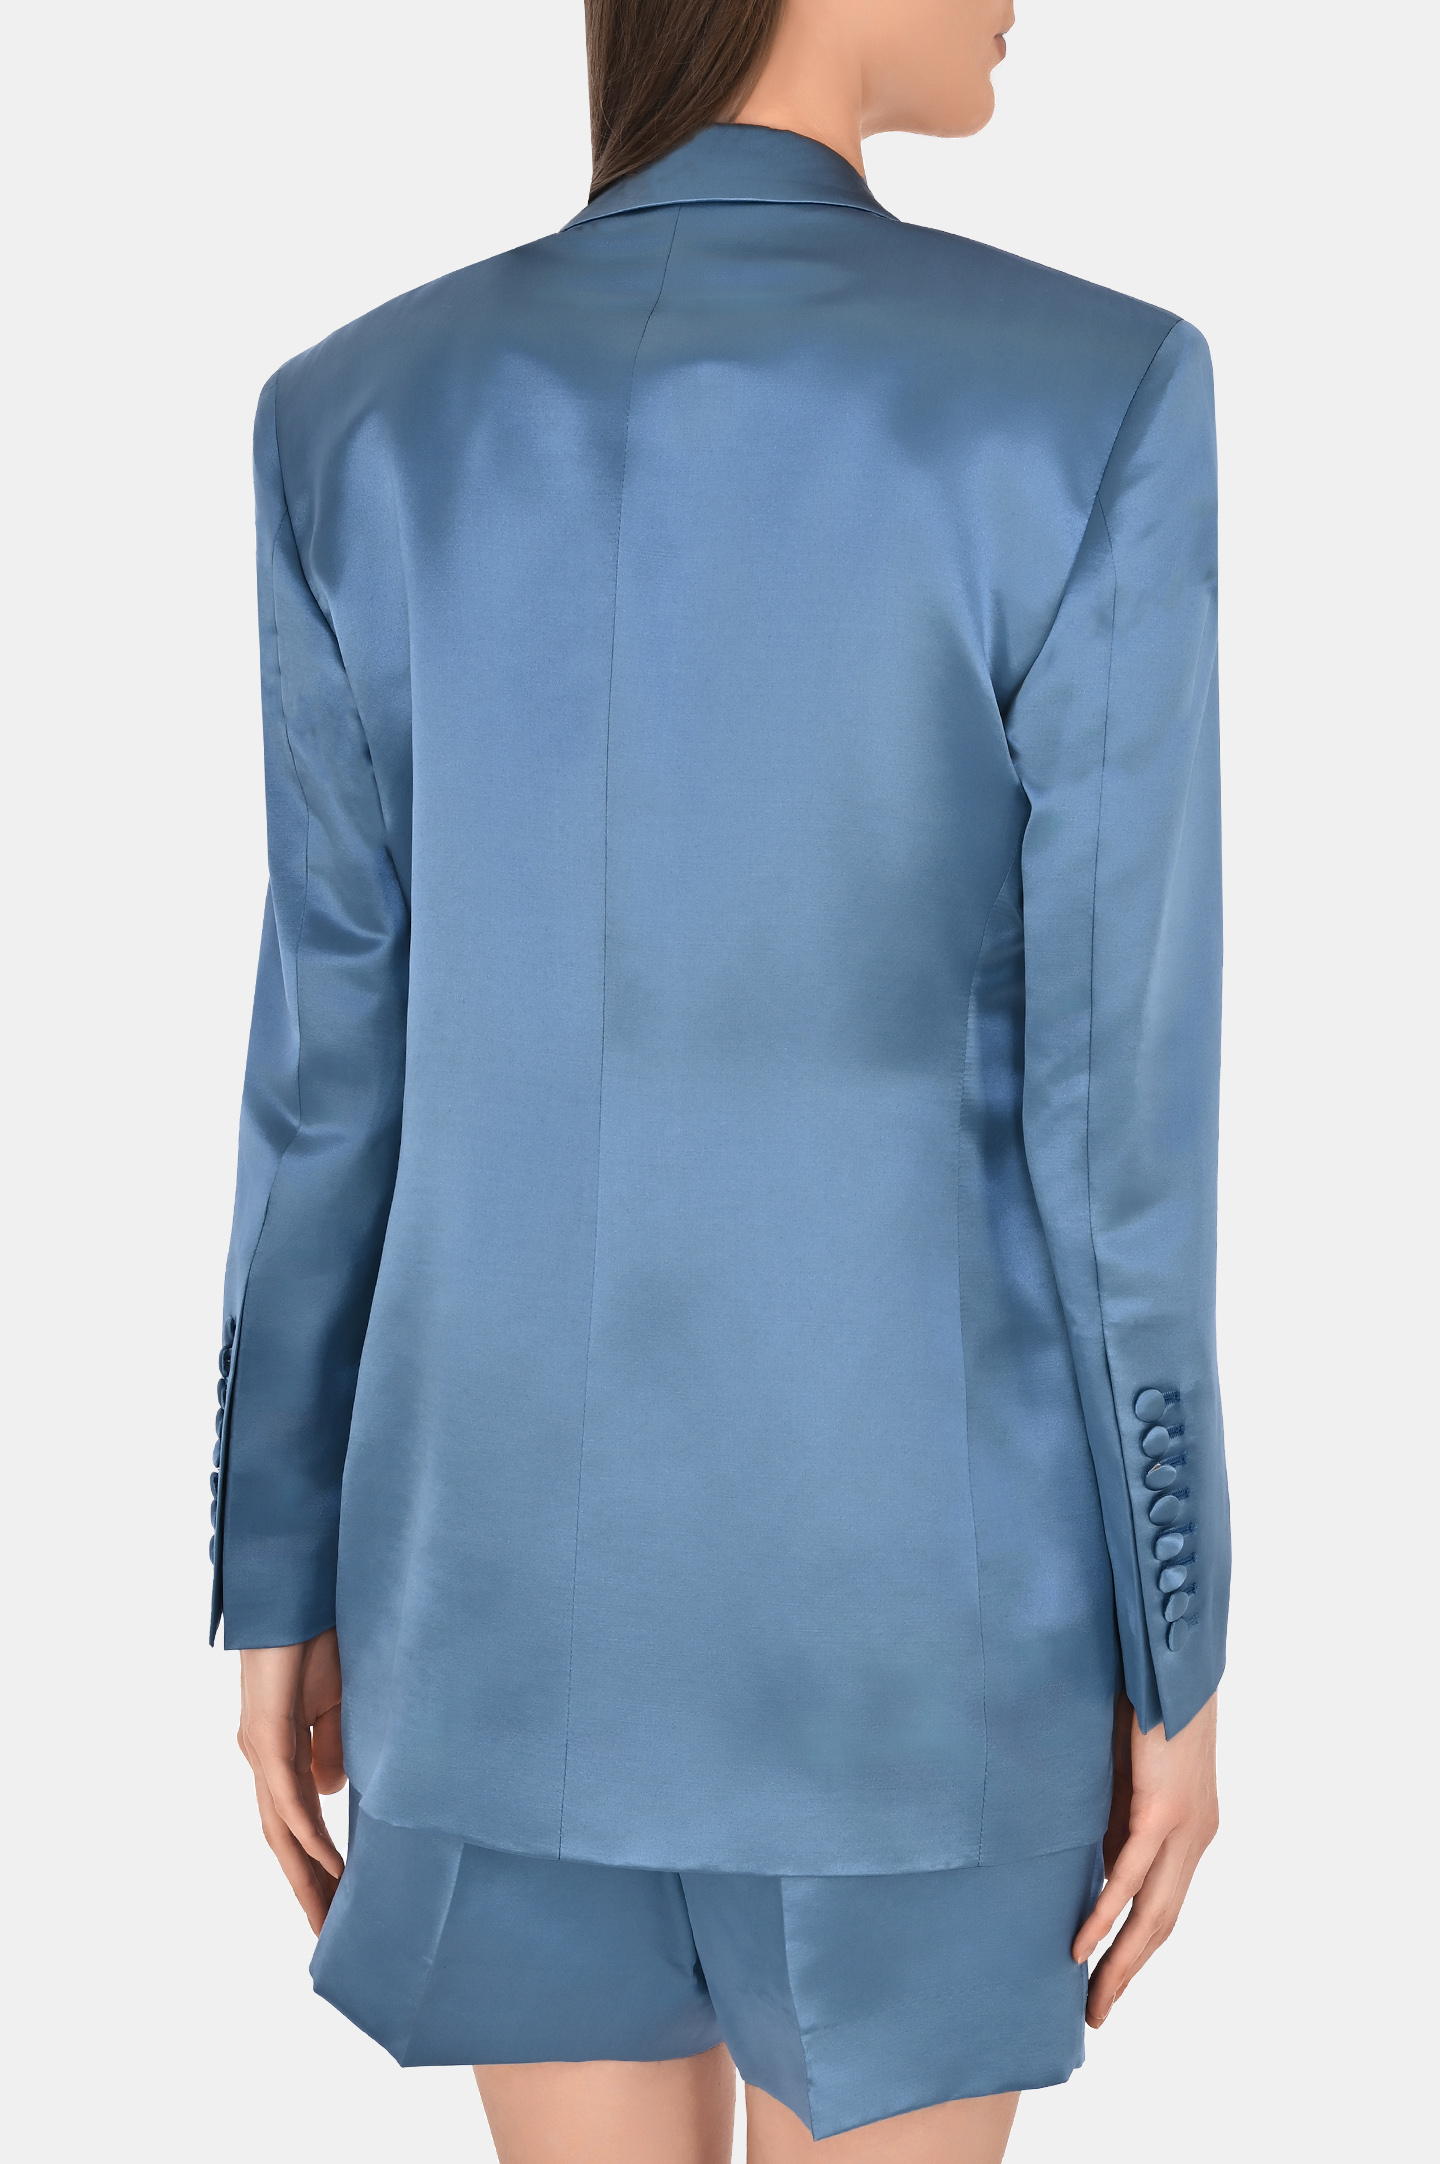 Жакет из шерсти и шелка двухбортный с карманами JACOB LEE WSB047SS24JB, цвет: Голубой, Женский